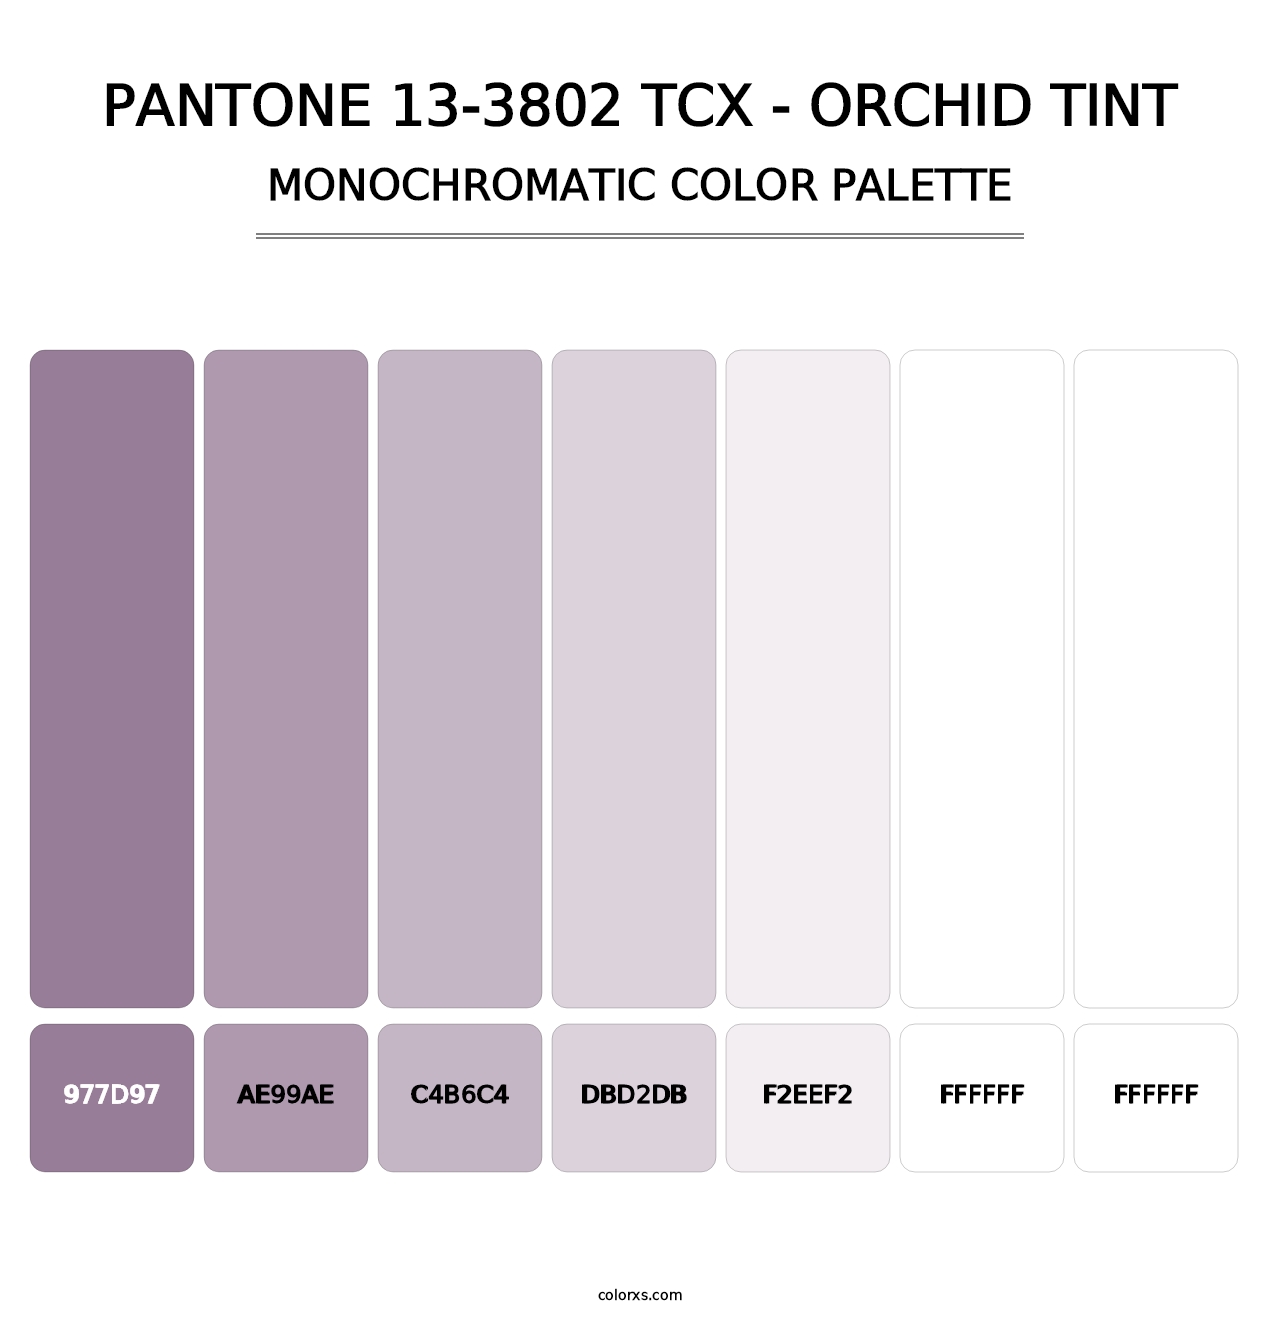 PANTONE 13-3802 TCX - Orchid Tint - Monochromatic Color Palette